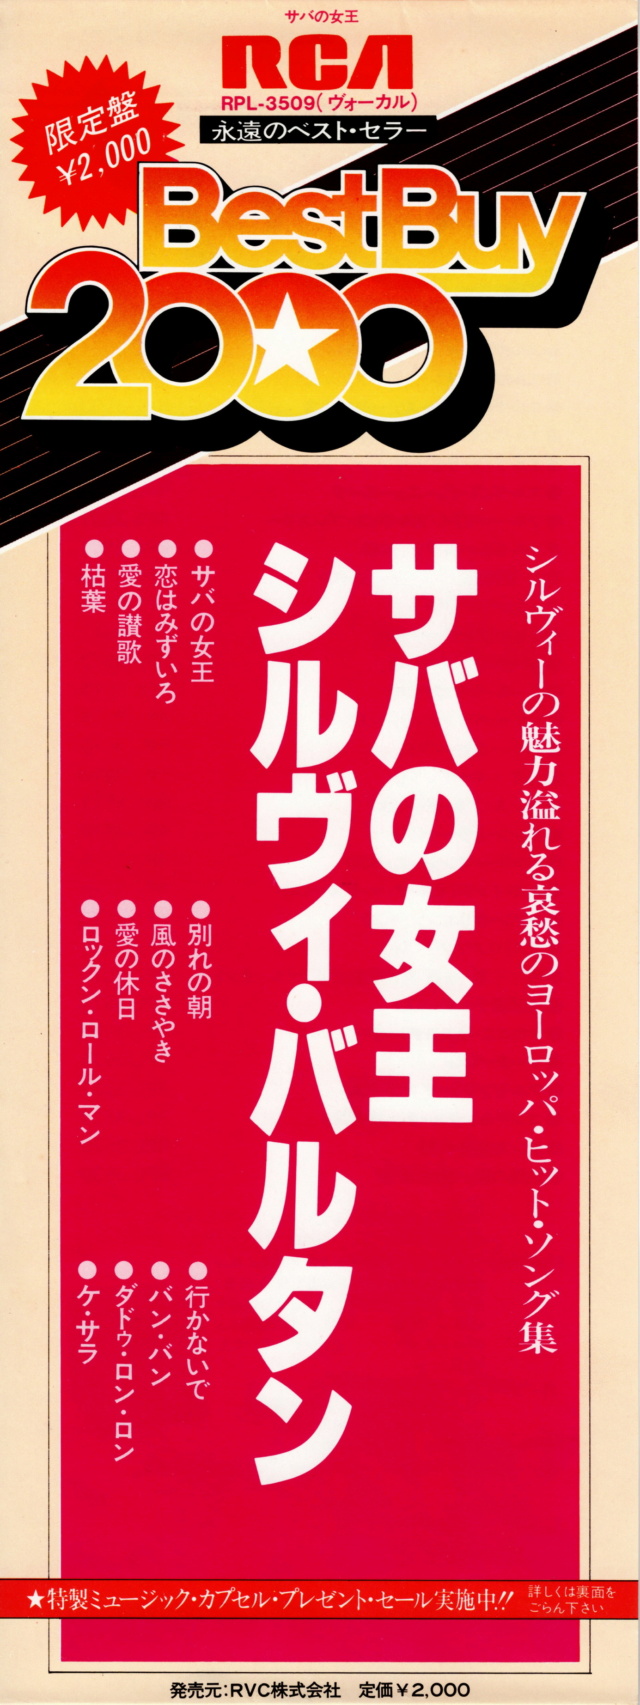 Discographie Japonaise - 4ème partie (33 T COMPILATION) - Page 16 Jpn_rp57